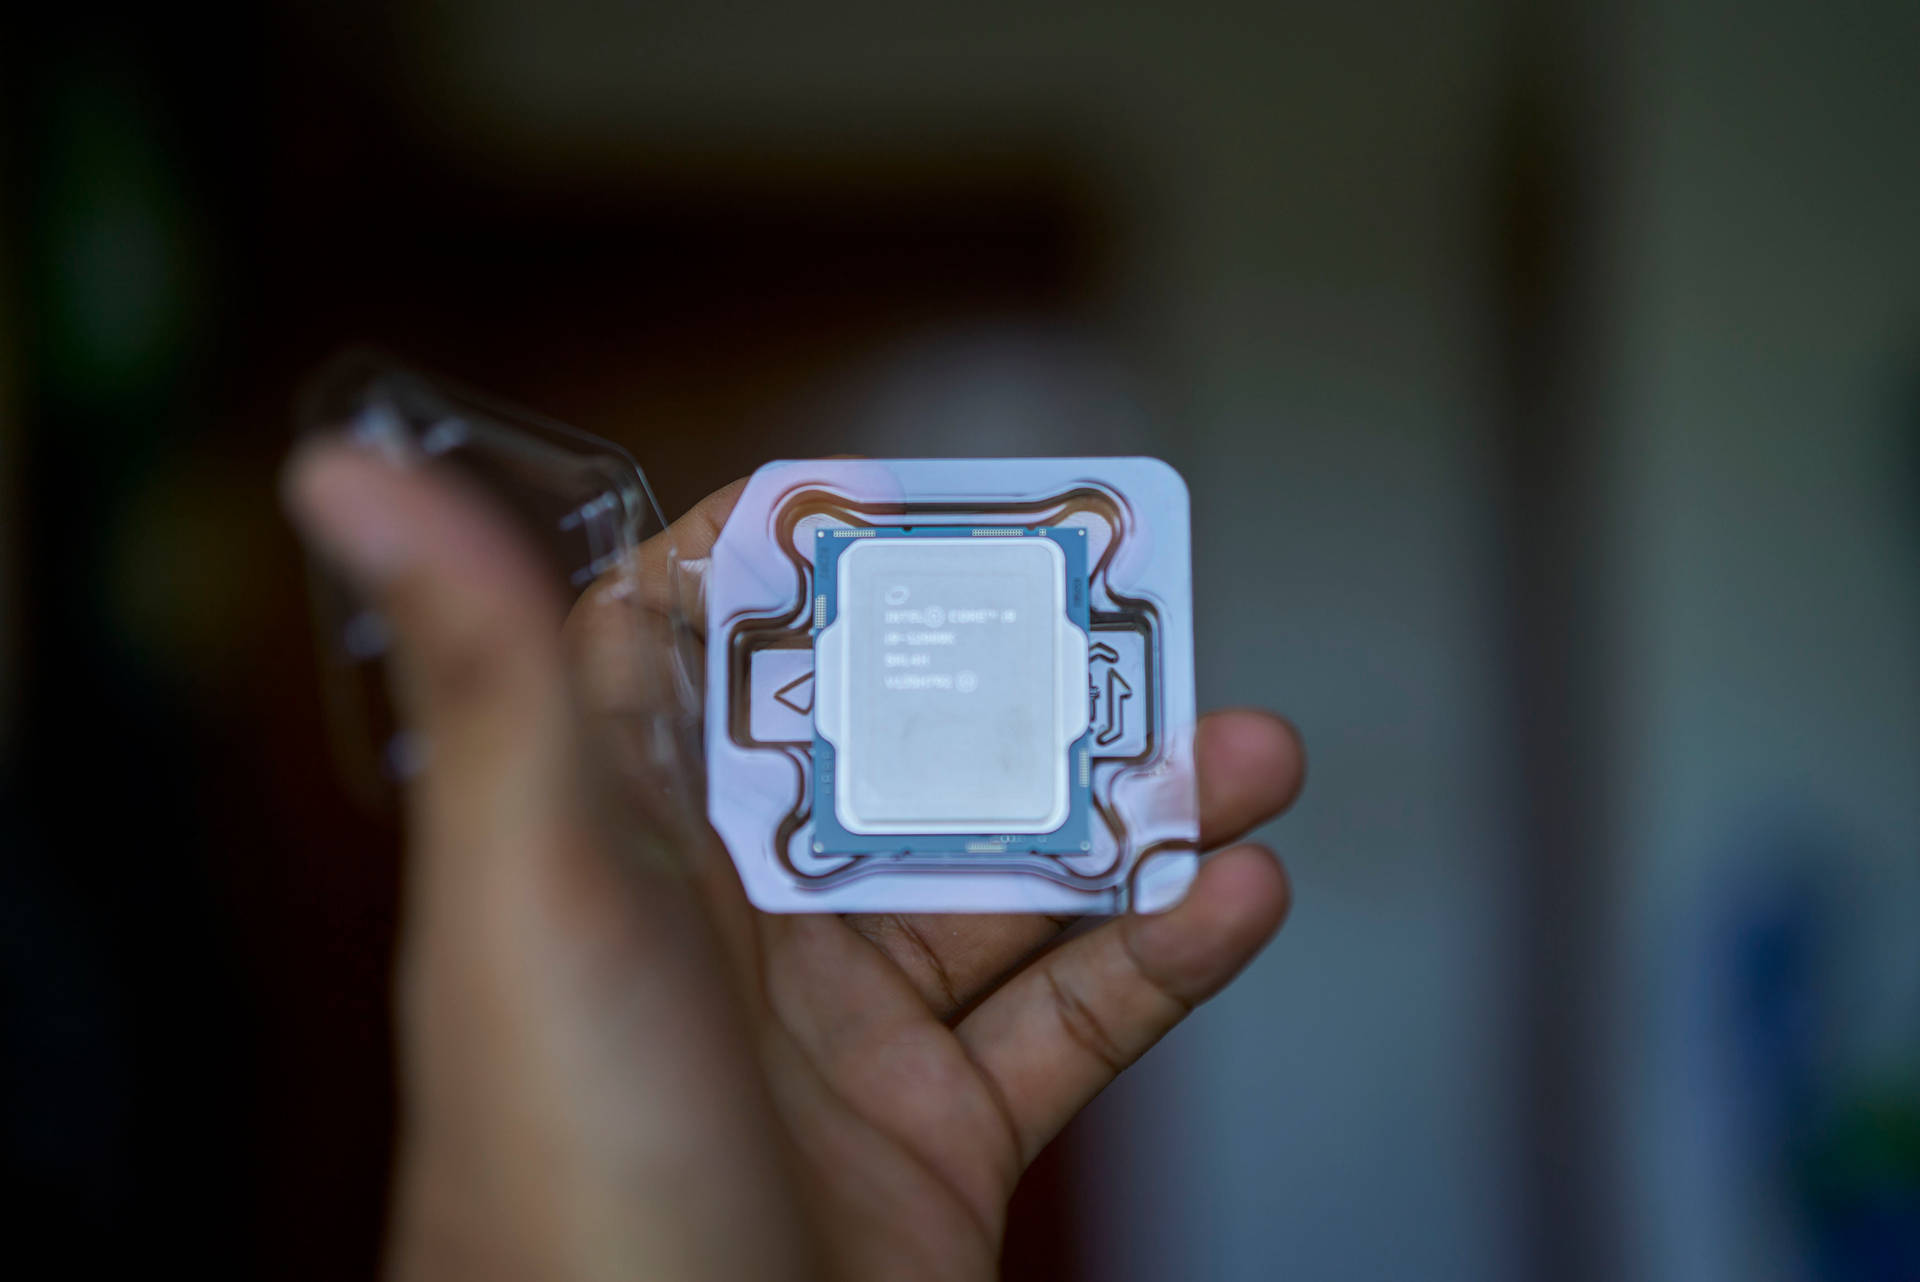 Intel Core I5 Processor Background